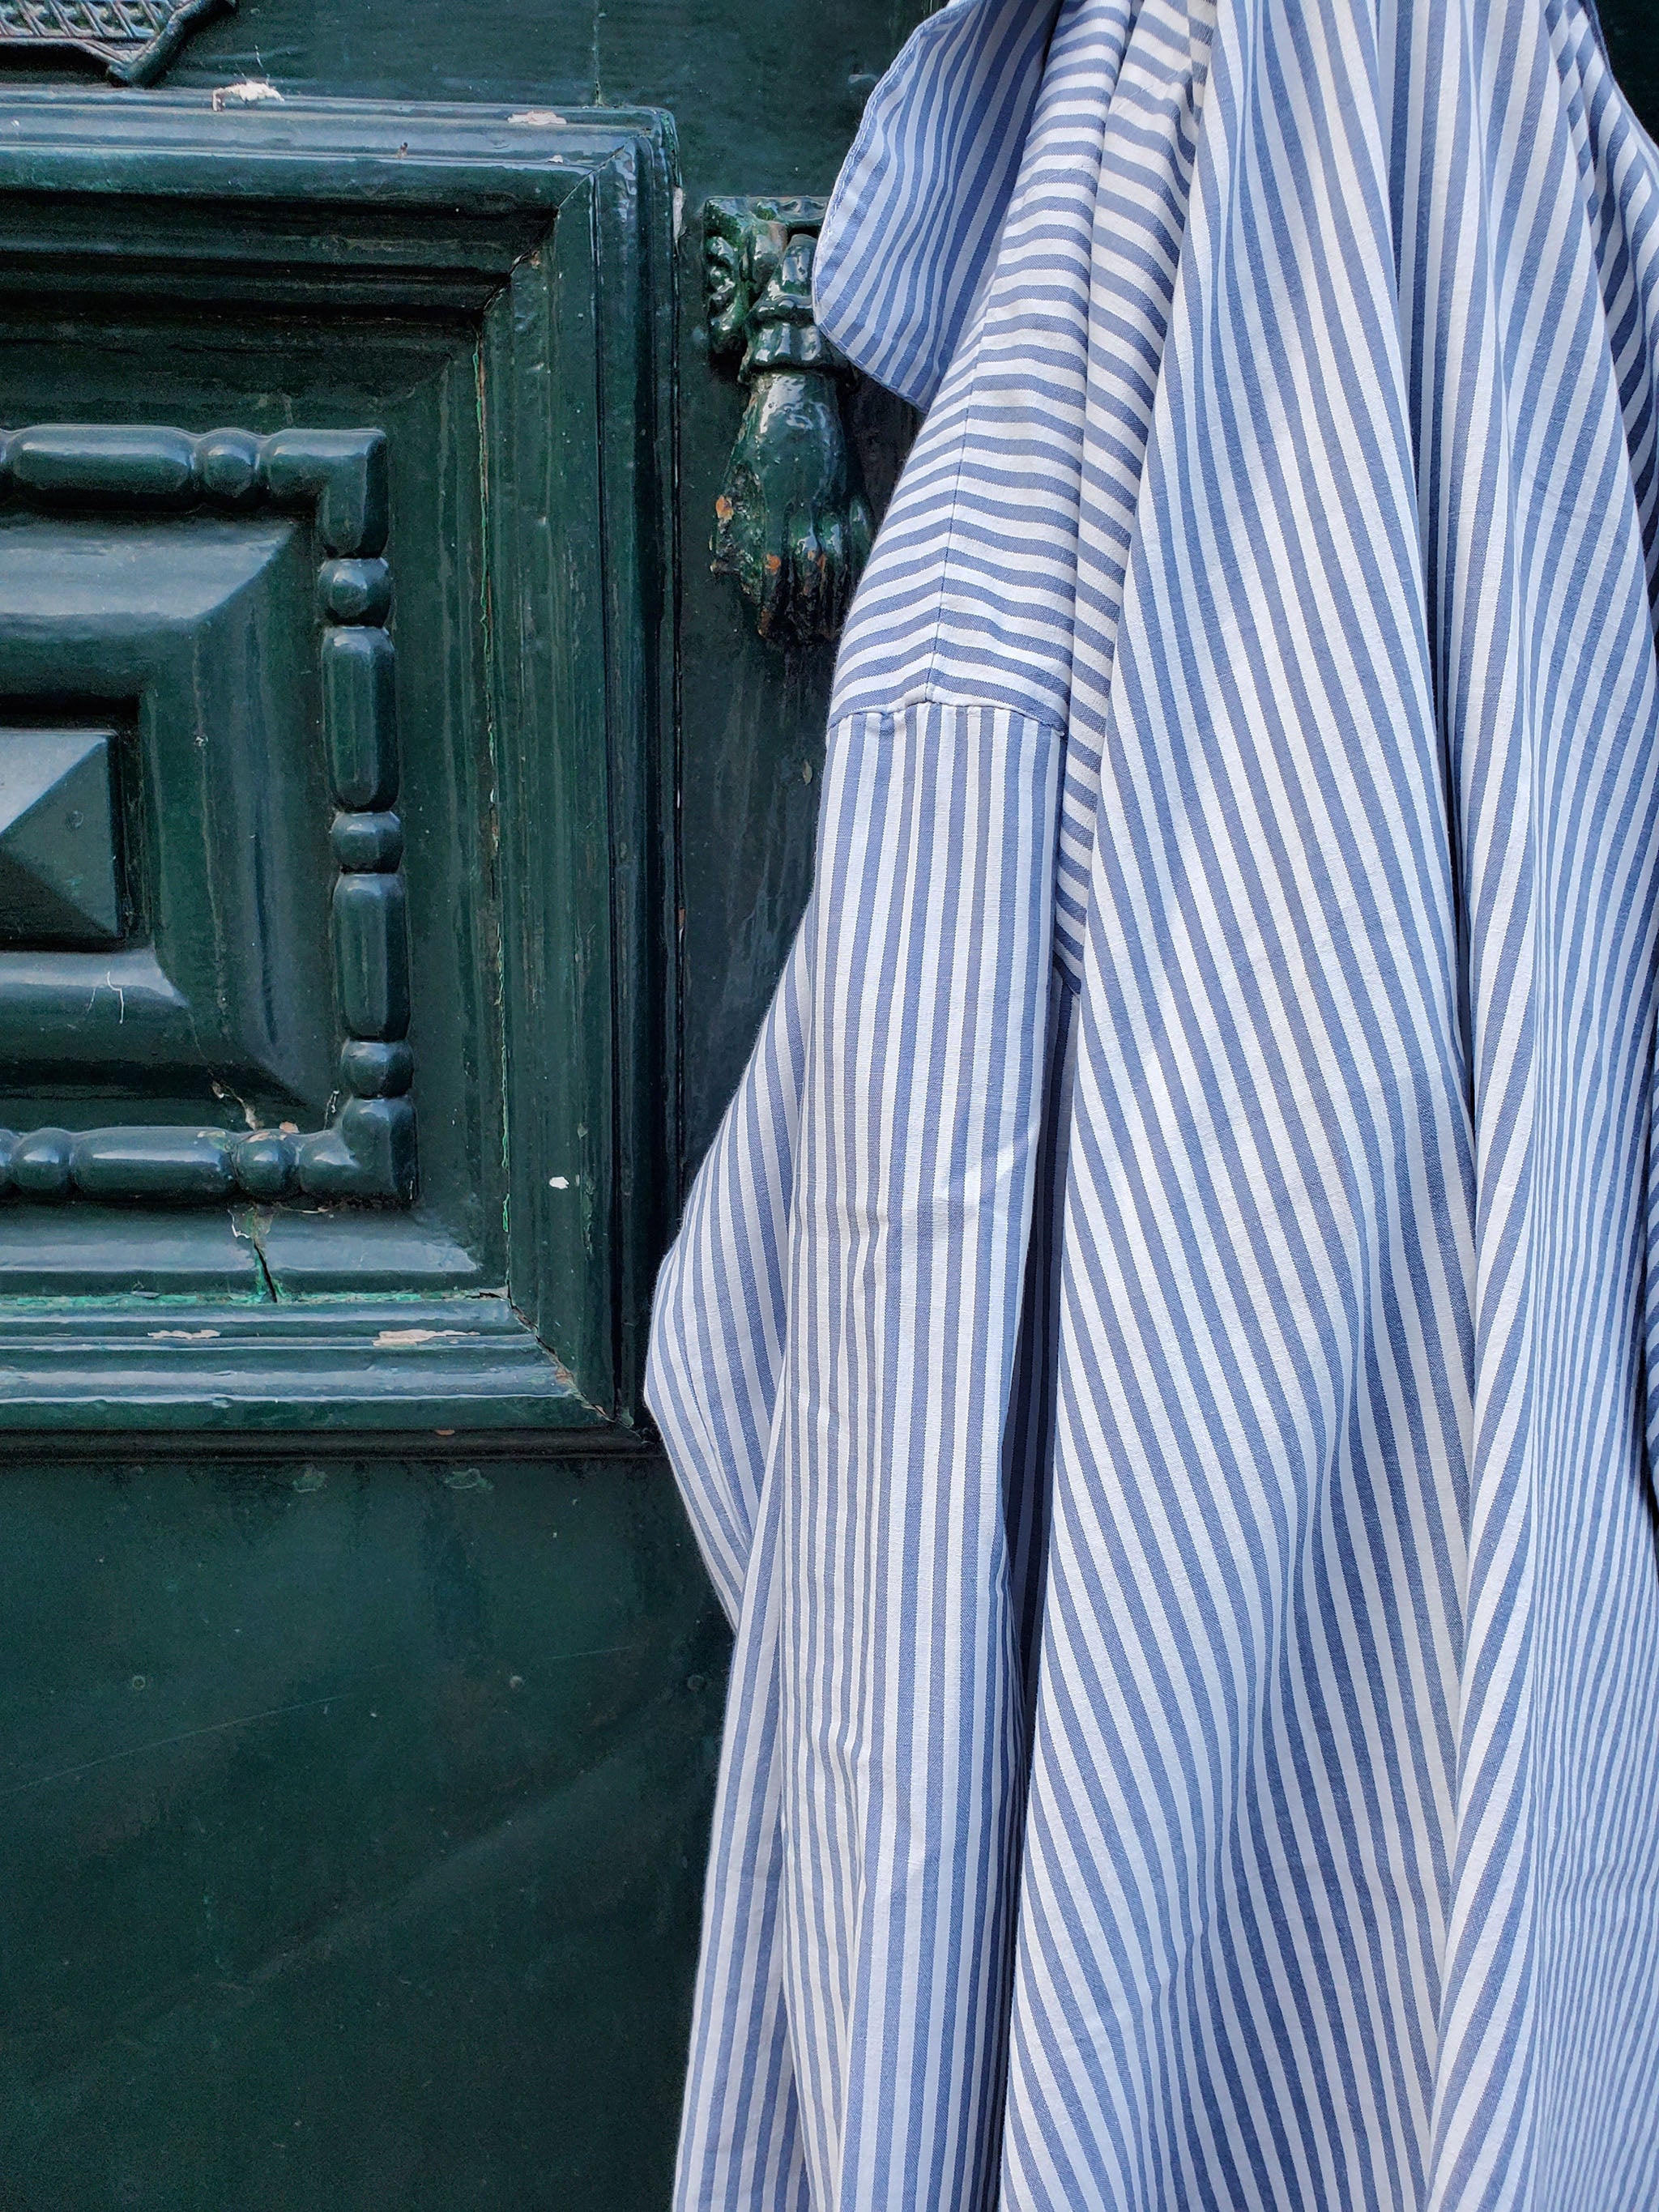 close up of striped pyjama shirt hanging at a door handle